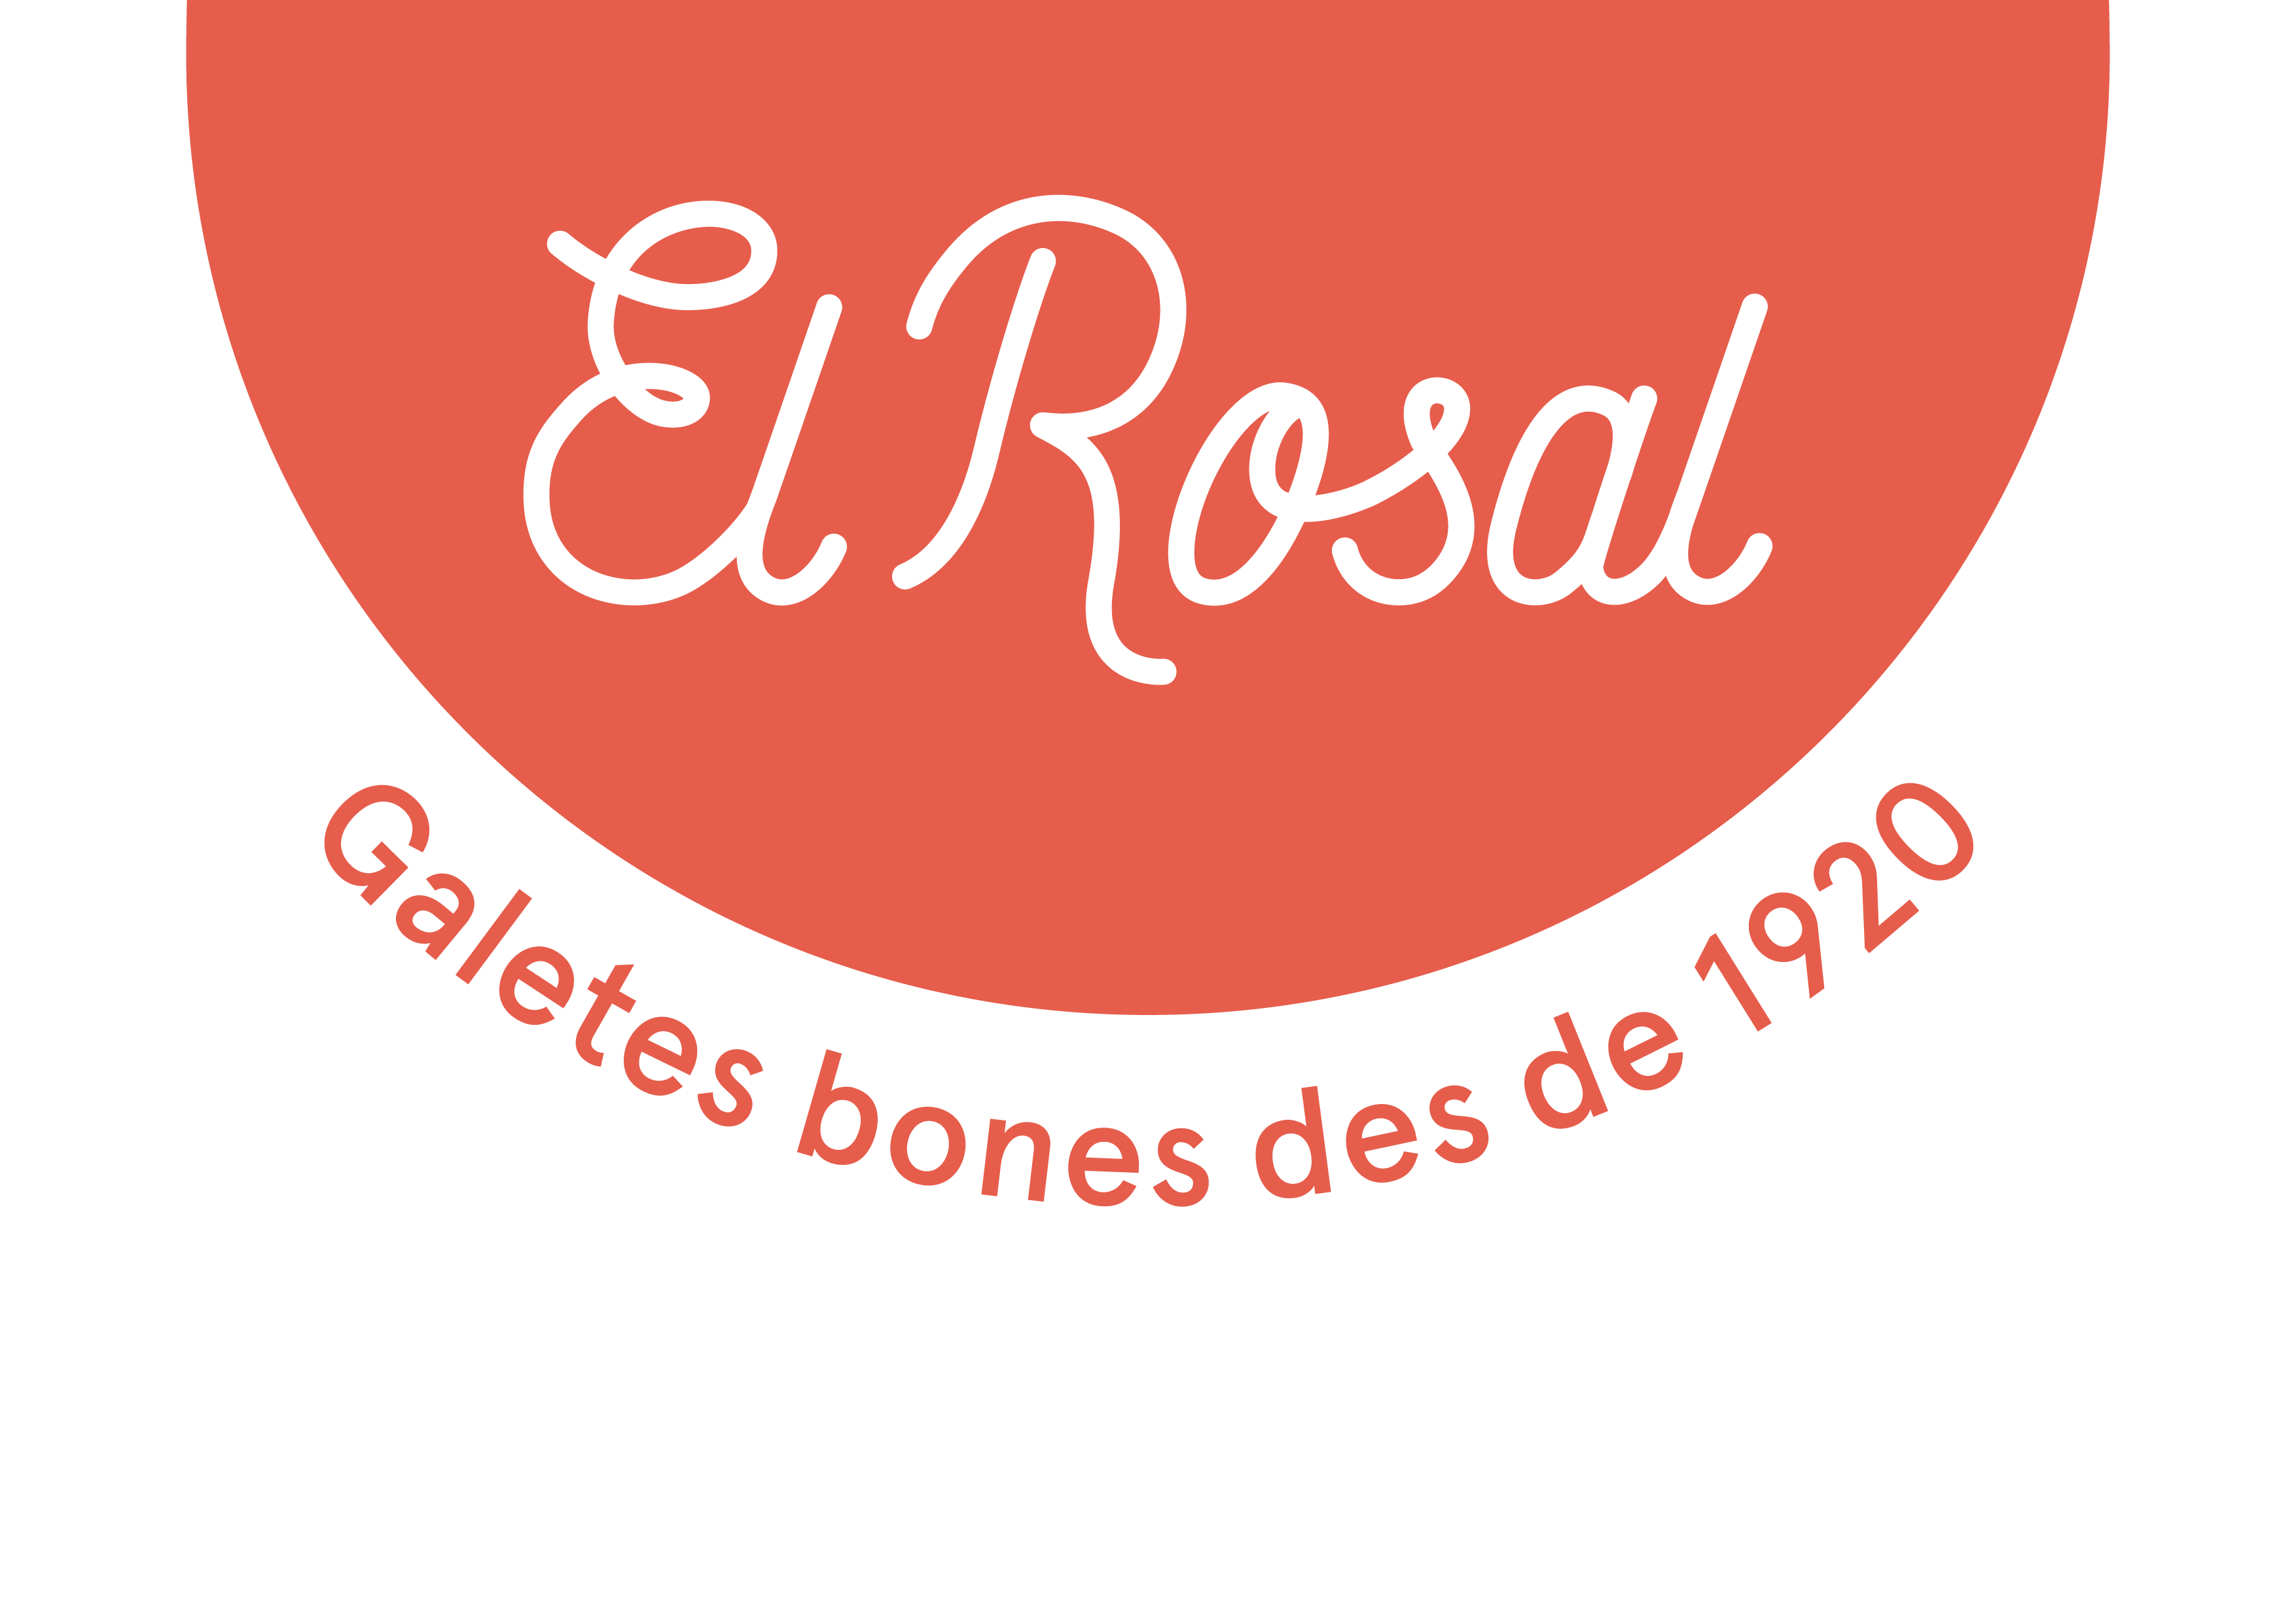 El Rosal - Galetes bones des de 1920